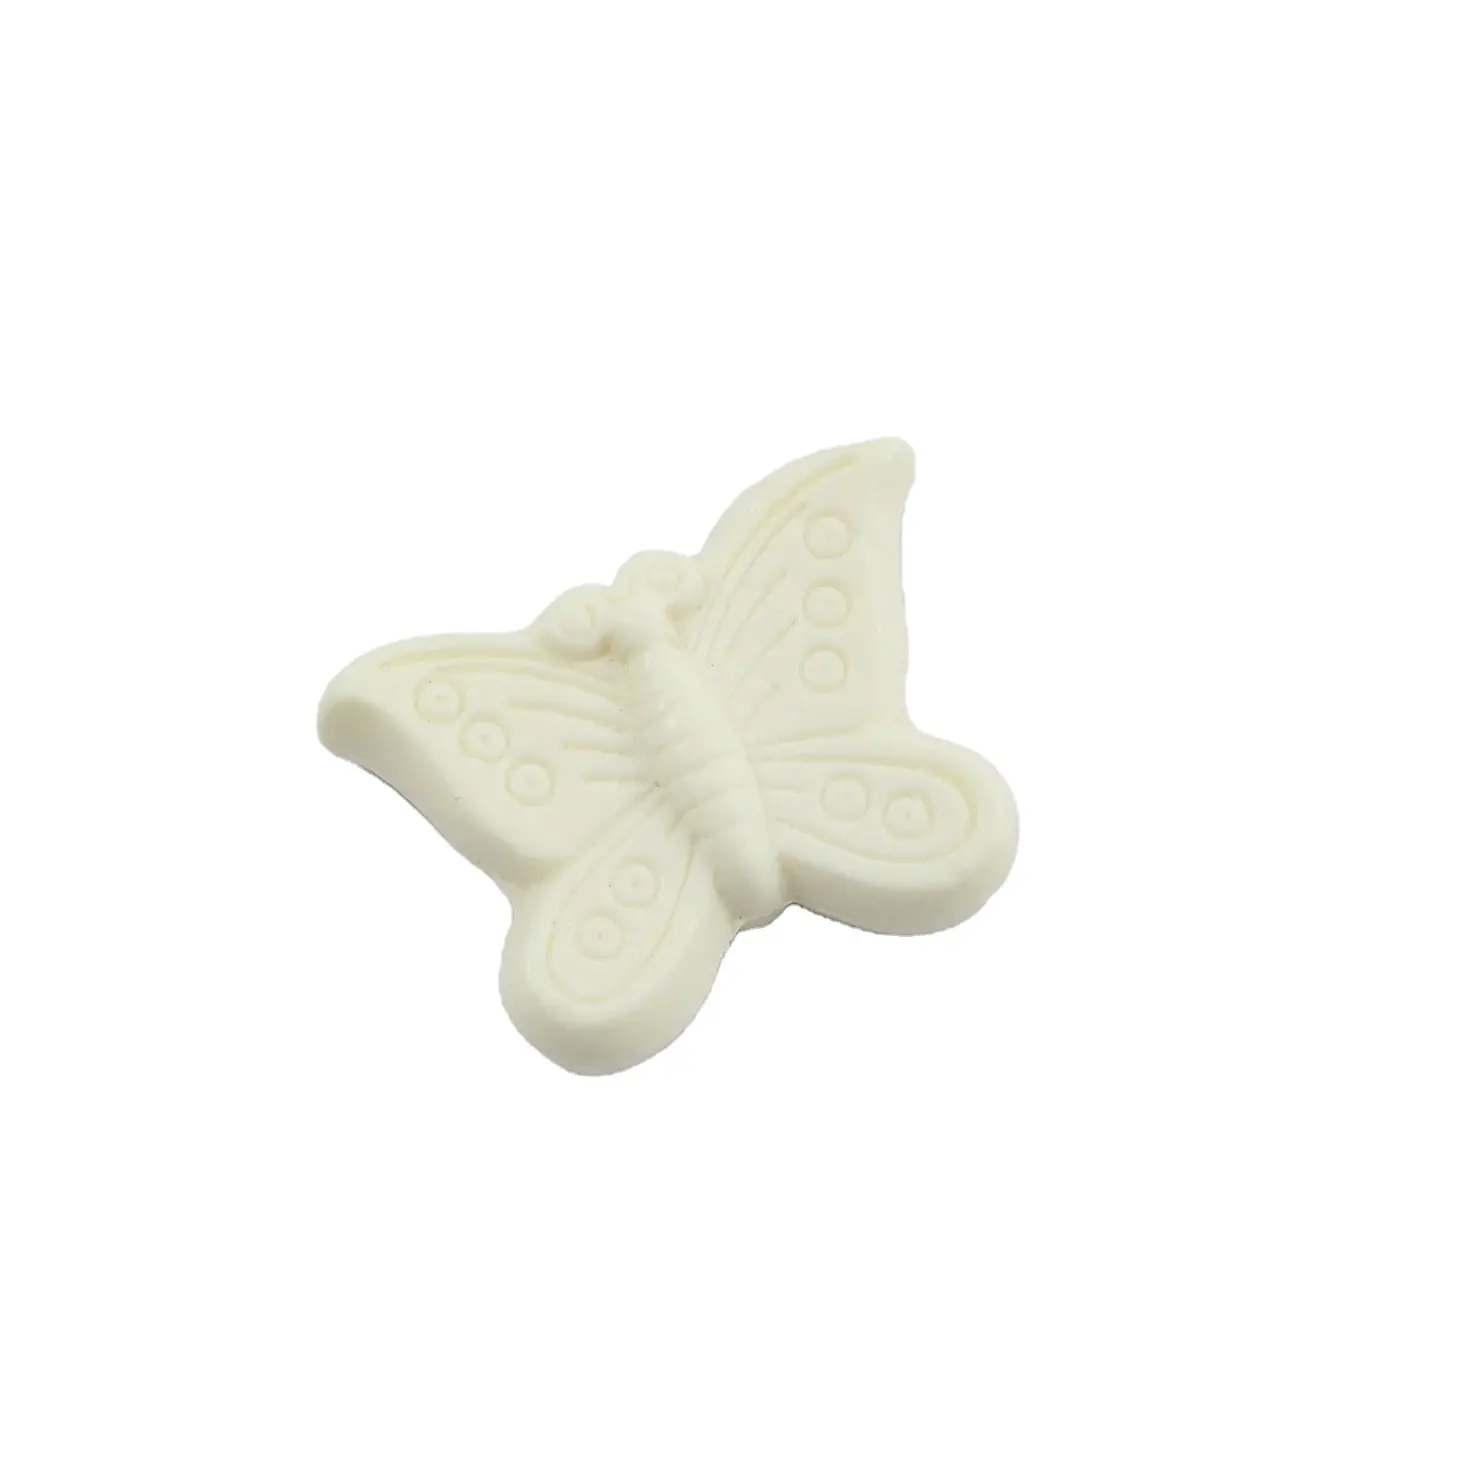 Accentra-Marke einfache Eleganz und Reinheit Meeresduft Schmetterlingsform weiße Bio-Seifene